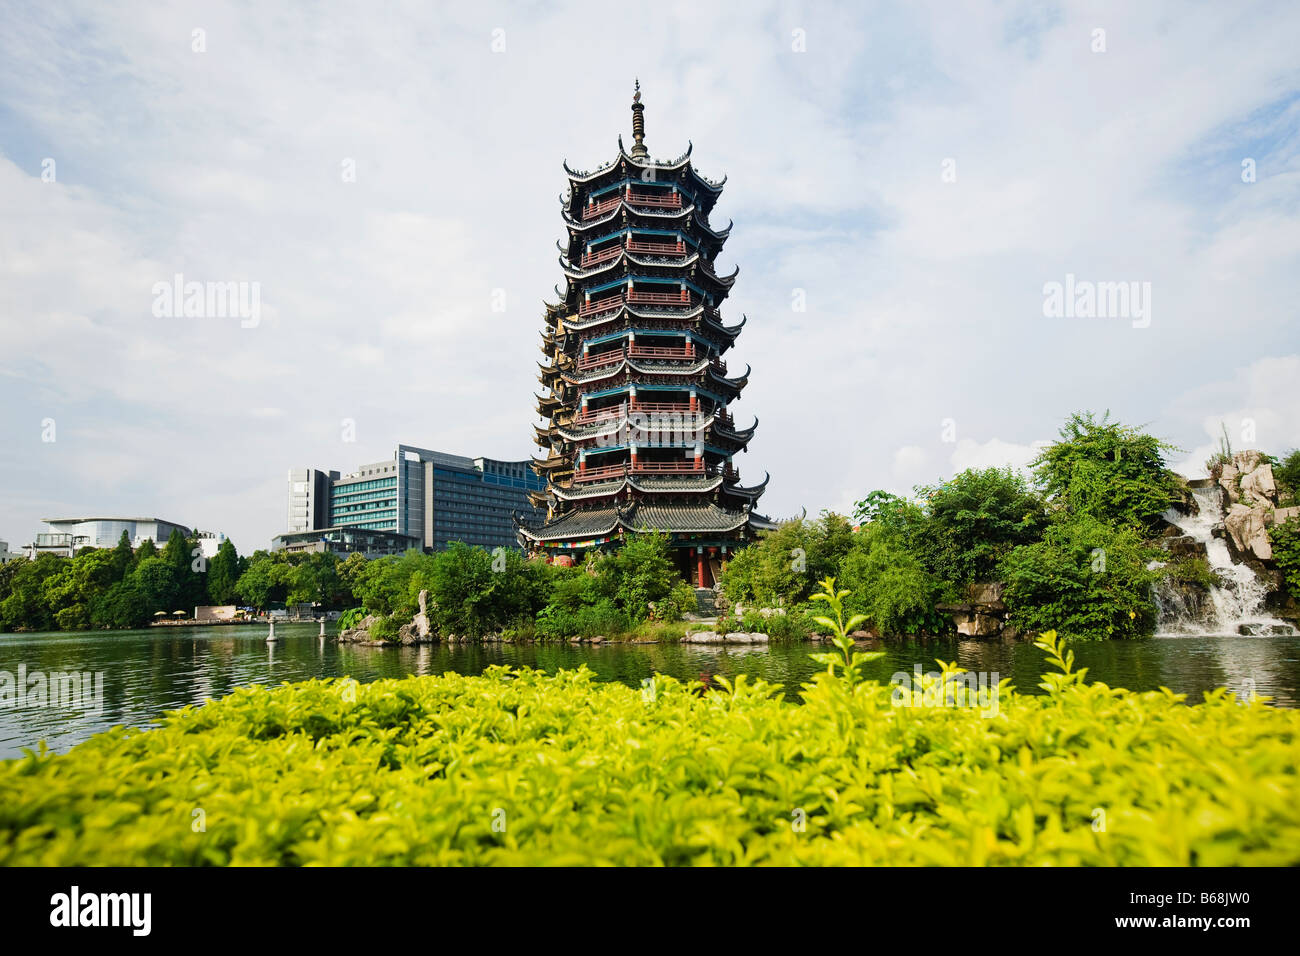 Pagoda at lakeside, Banyan Lake, Guilin, Guangxi Province, China Stock Photo